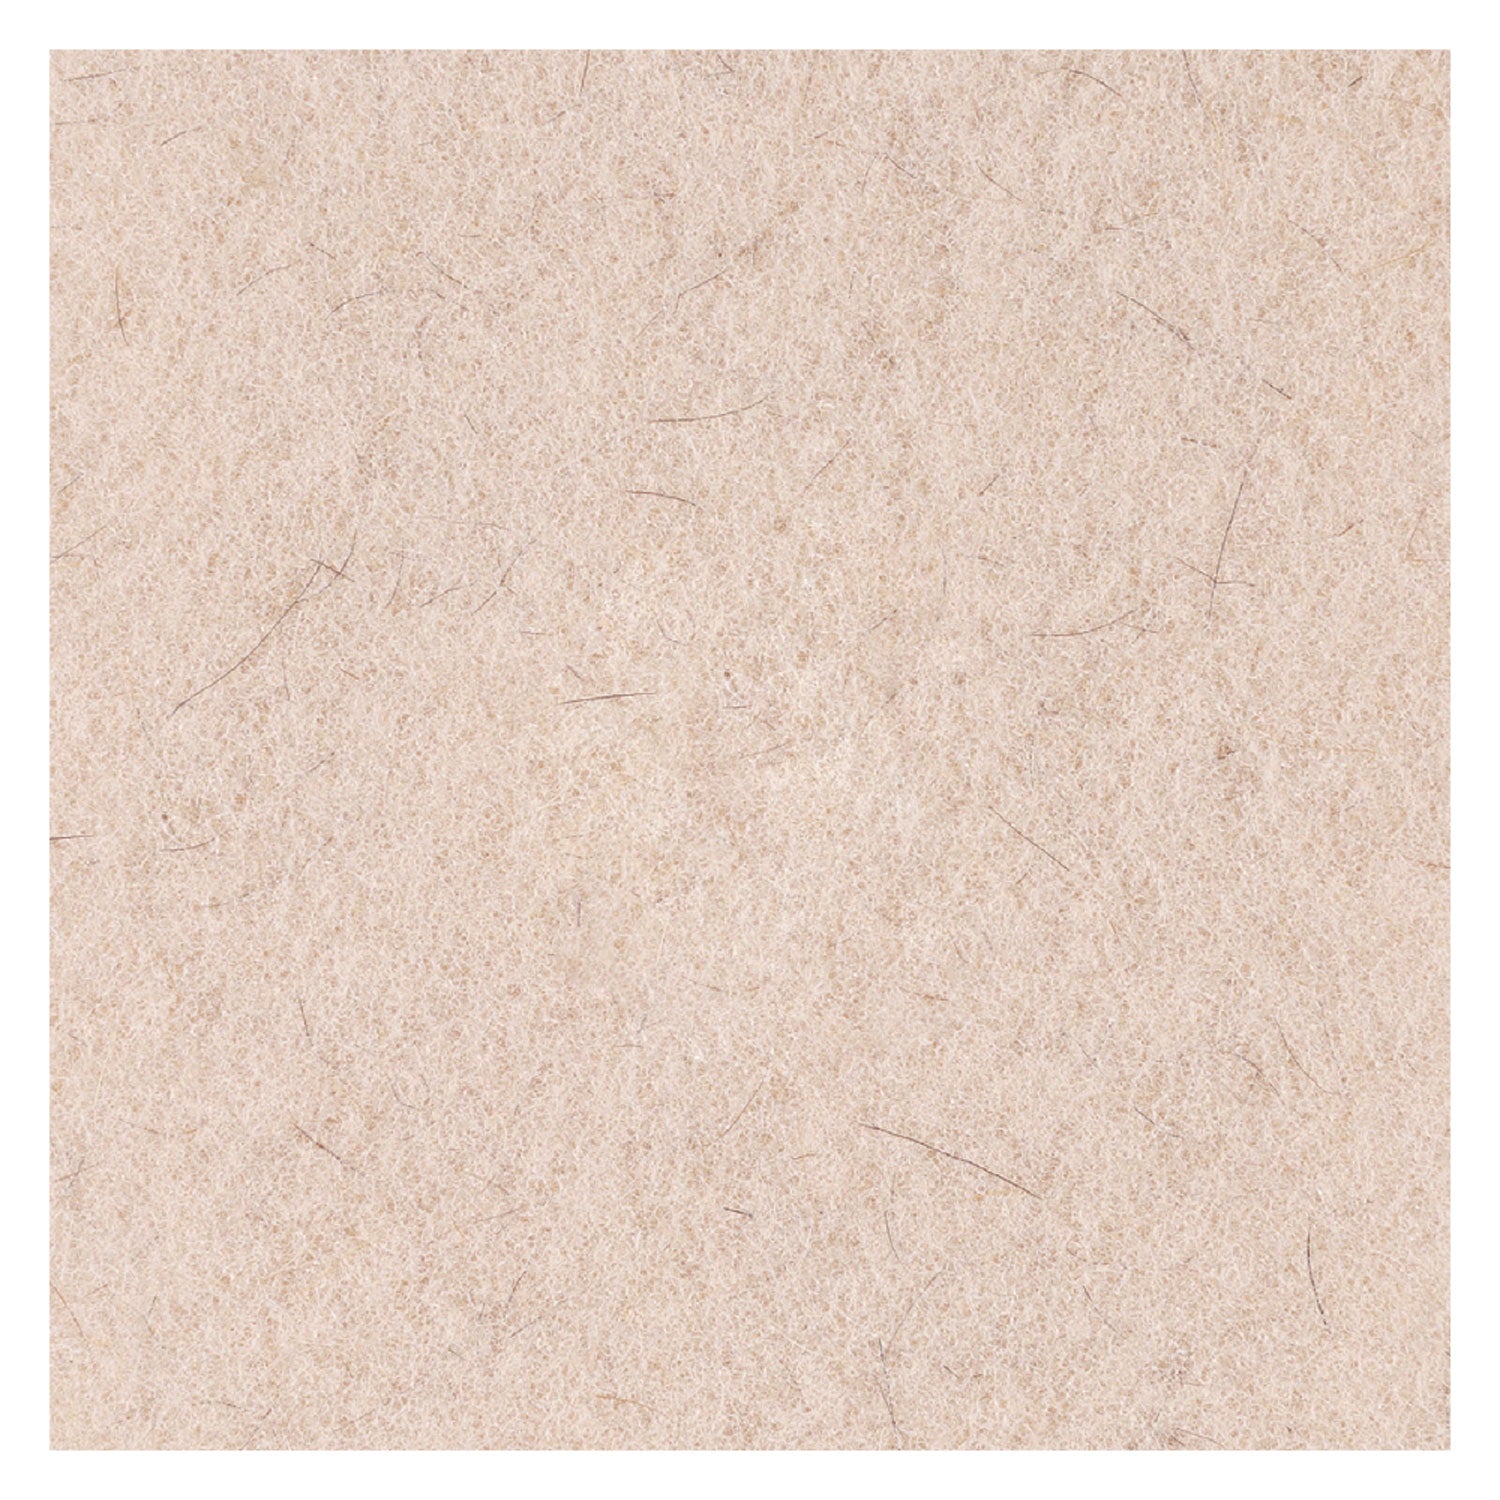 Natural Hog Hair Burnishing Floor Pads, 17" Diameter, Tan, 5/Carton - 6